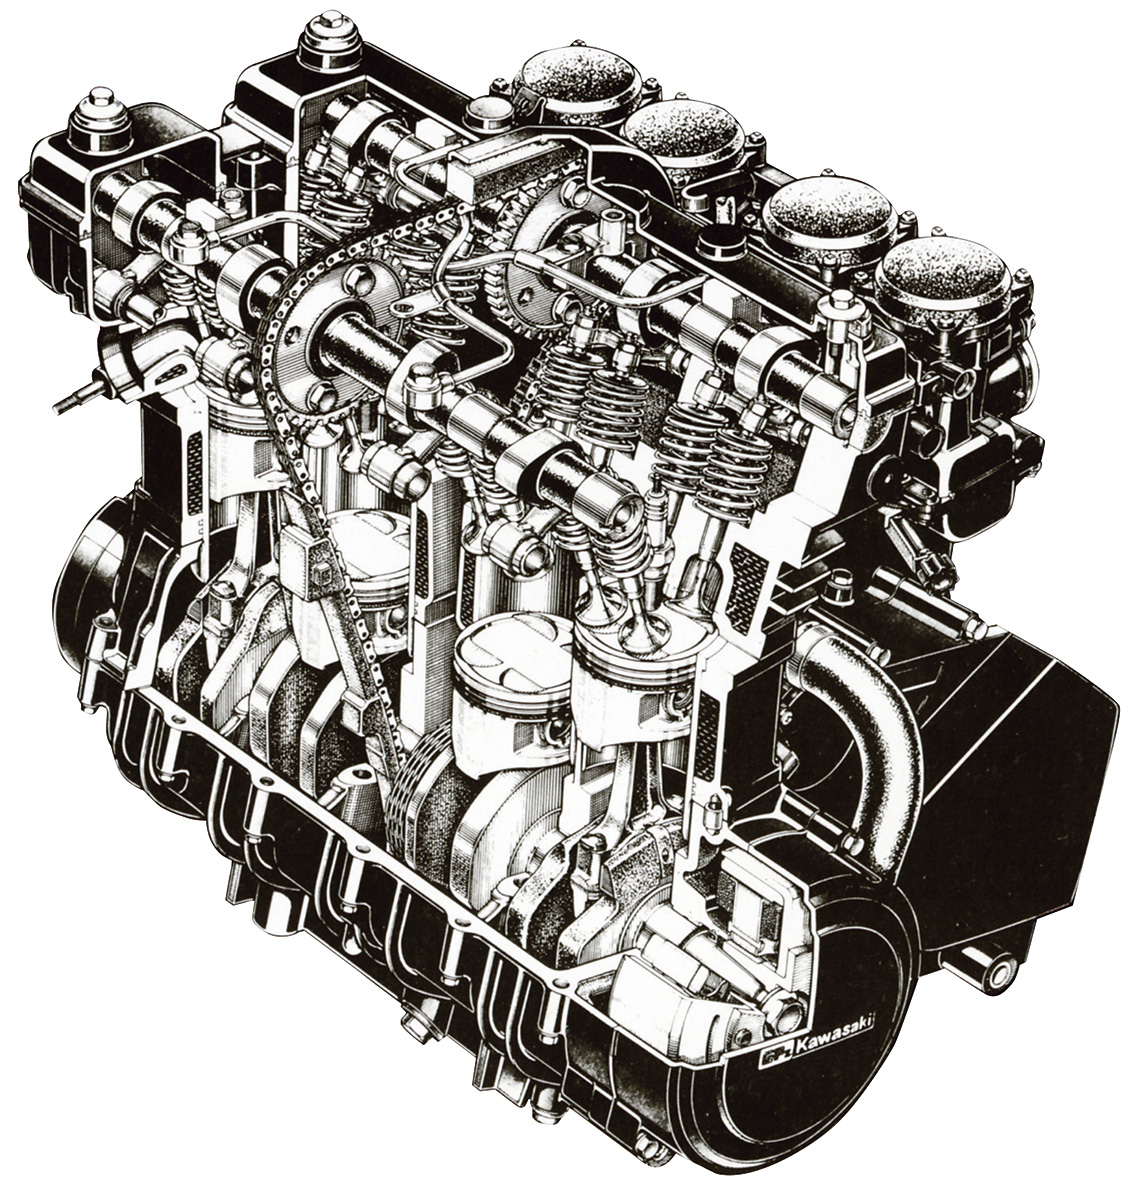 時代を彩ったカワサキのエンジンたち 後編 Gpz250r Gpz400s ザンザス Gpz400r W650 カワサキのエンジン カワサキイチバン